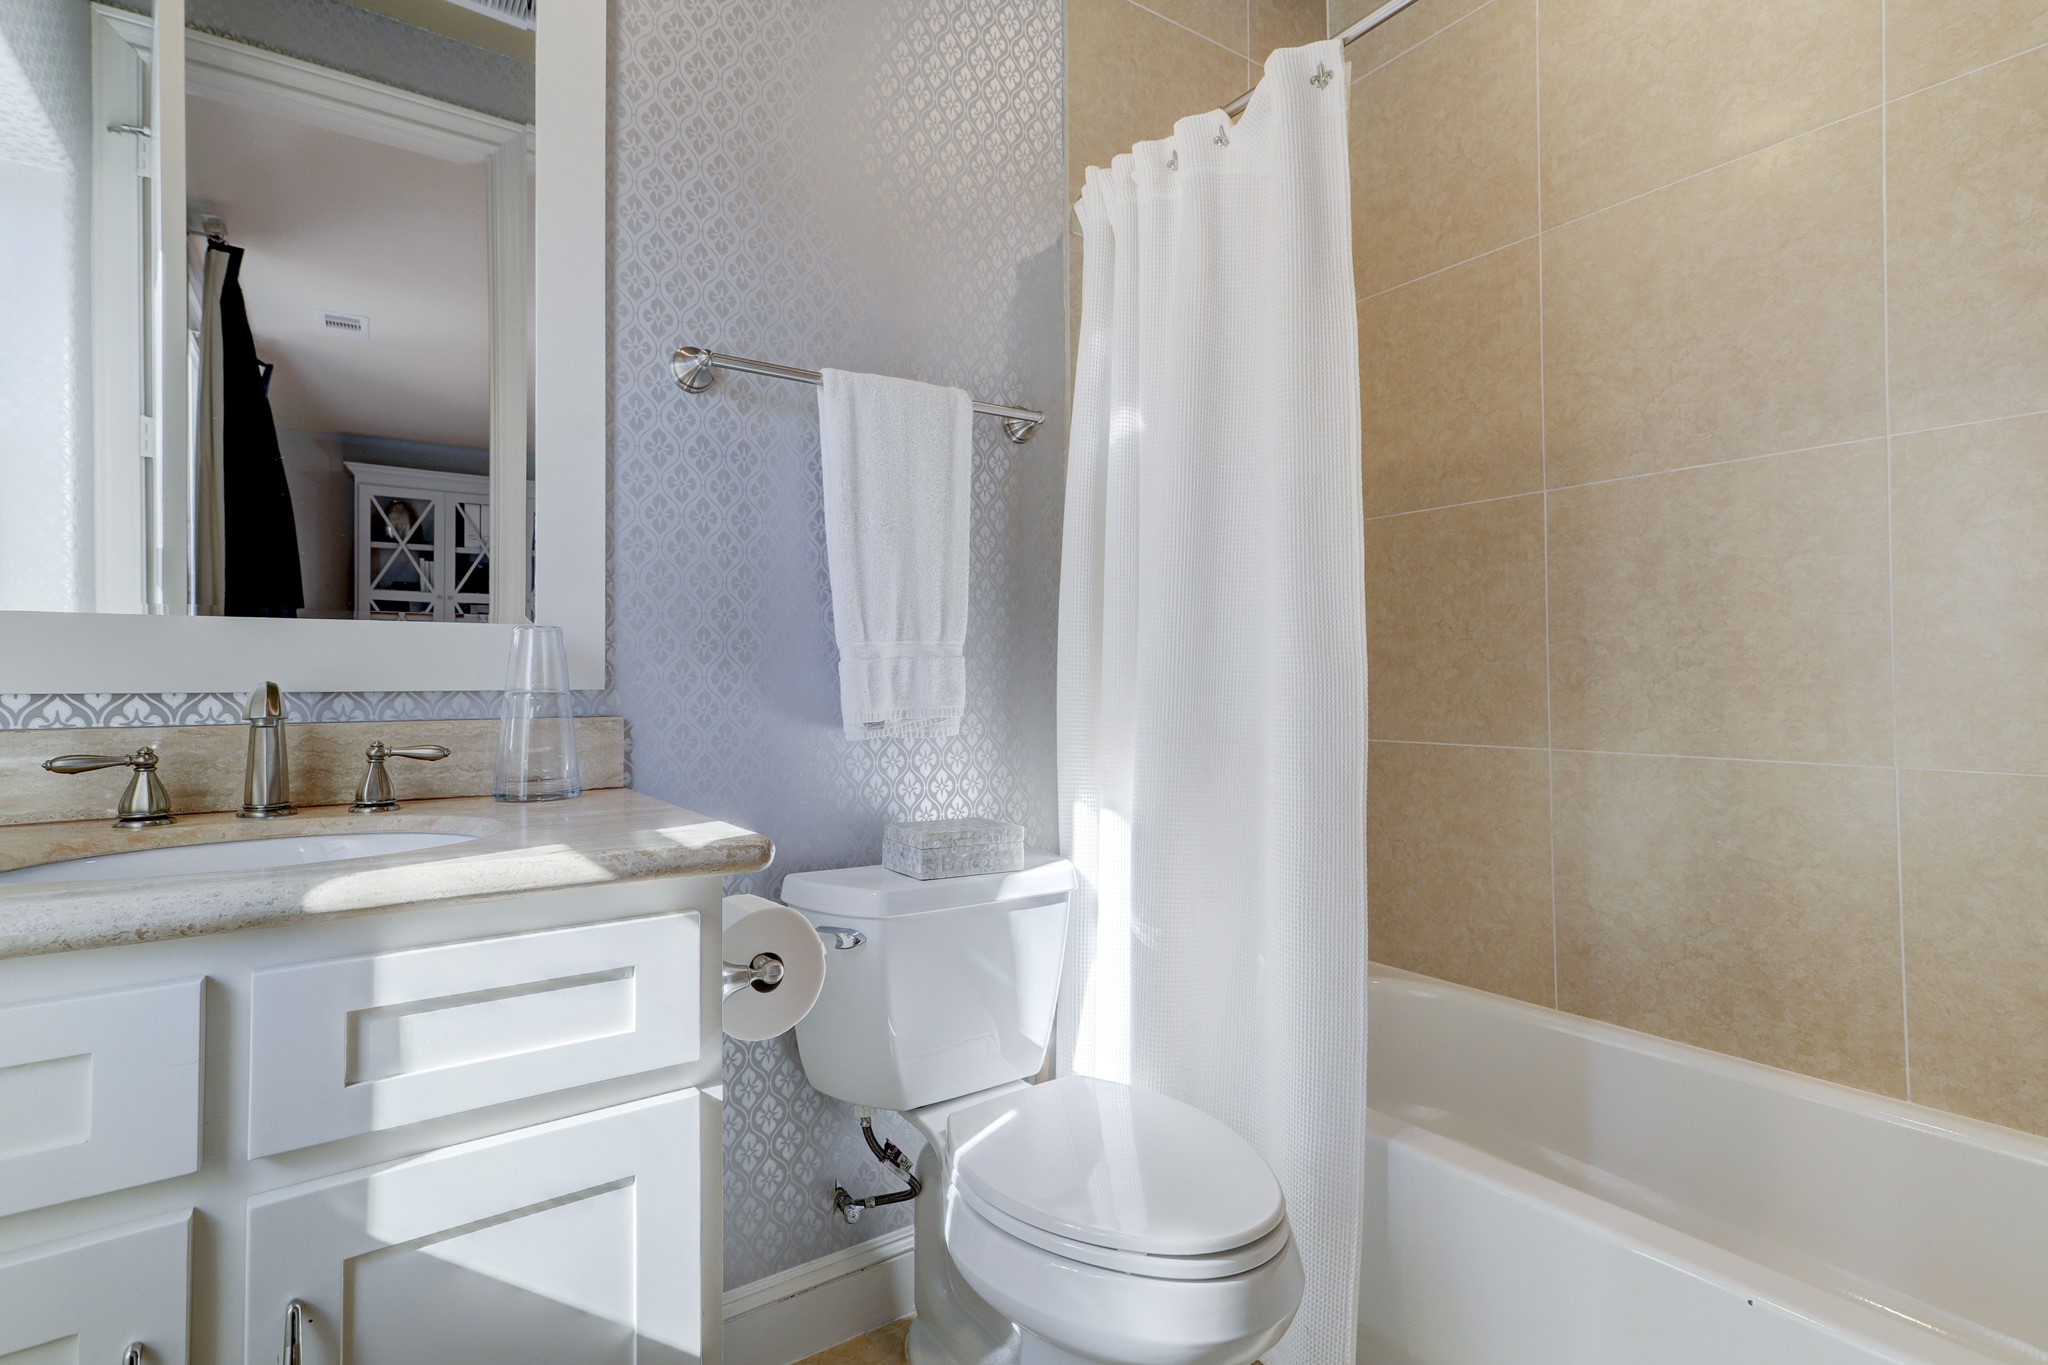 First floor en-suite bath with designer wallpaper, tub/shower combo.